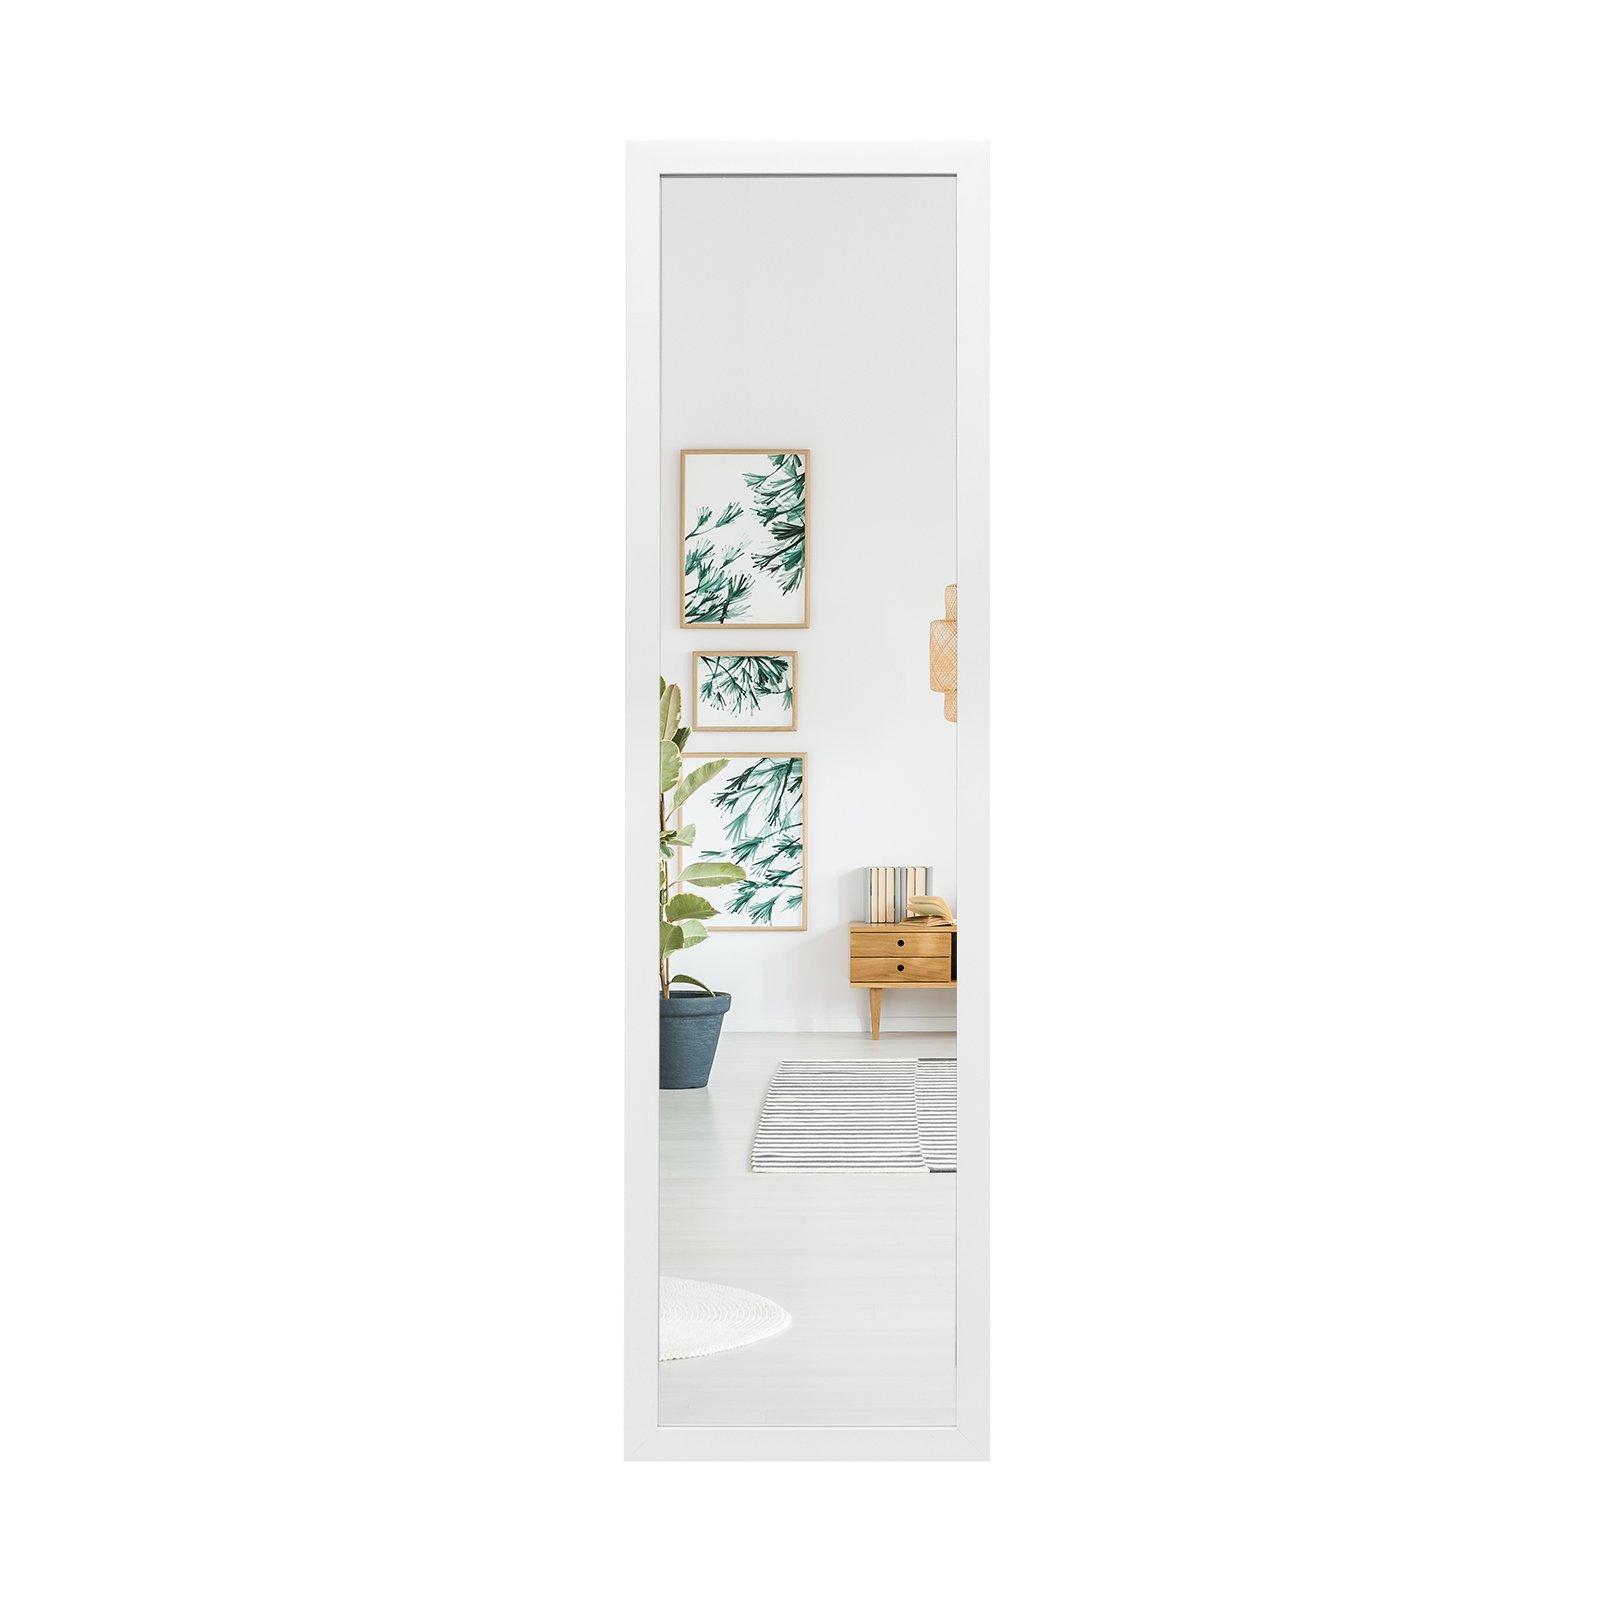 Full Length Over the Door Mirror Bedroom Entryway Wall Hanging Full Body Mirror